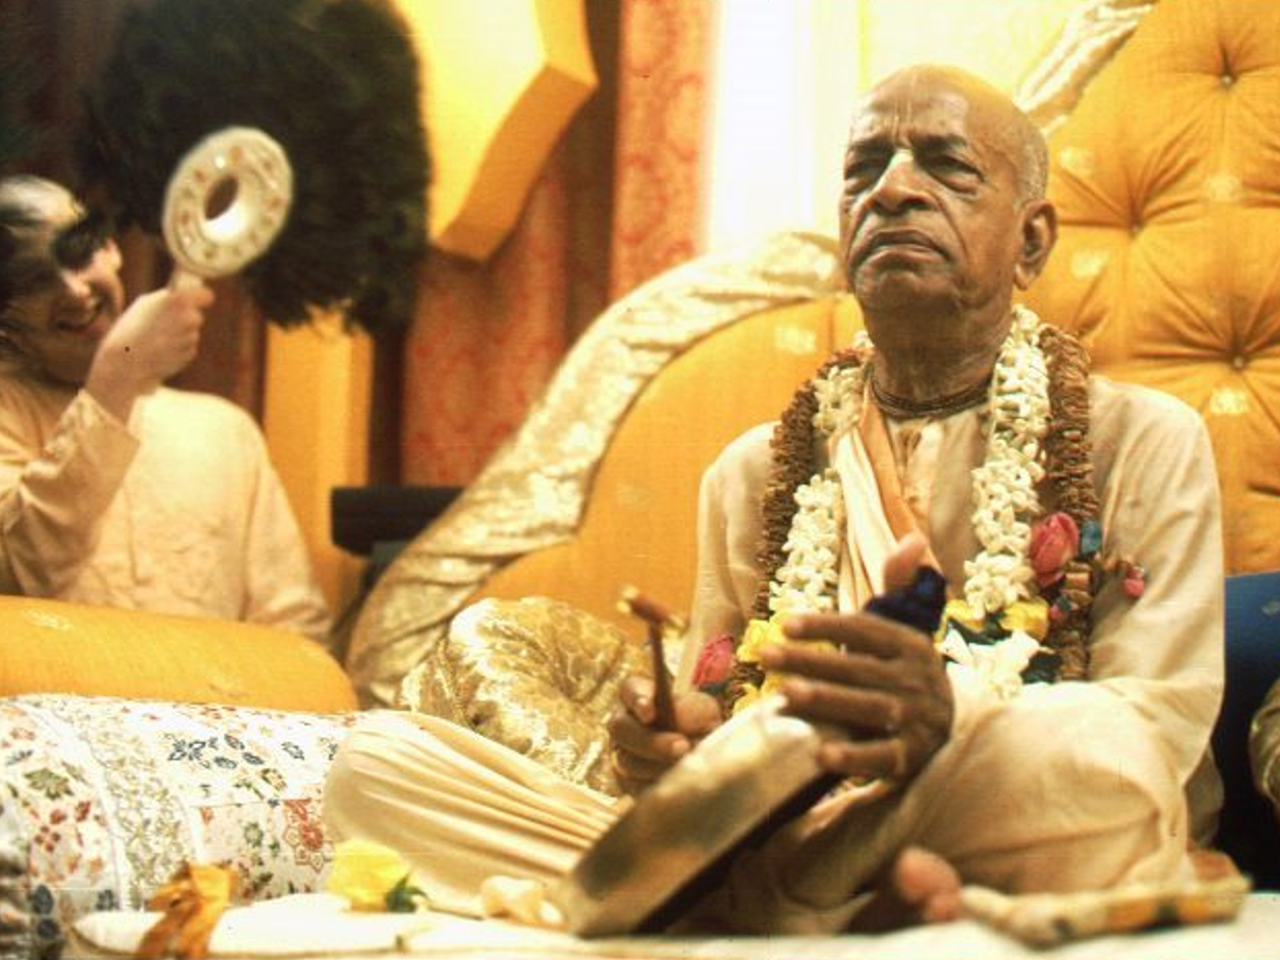 maha mantra Archives - The Hare Krishna Movement